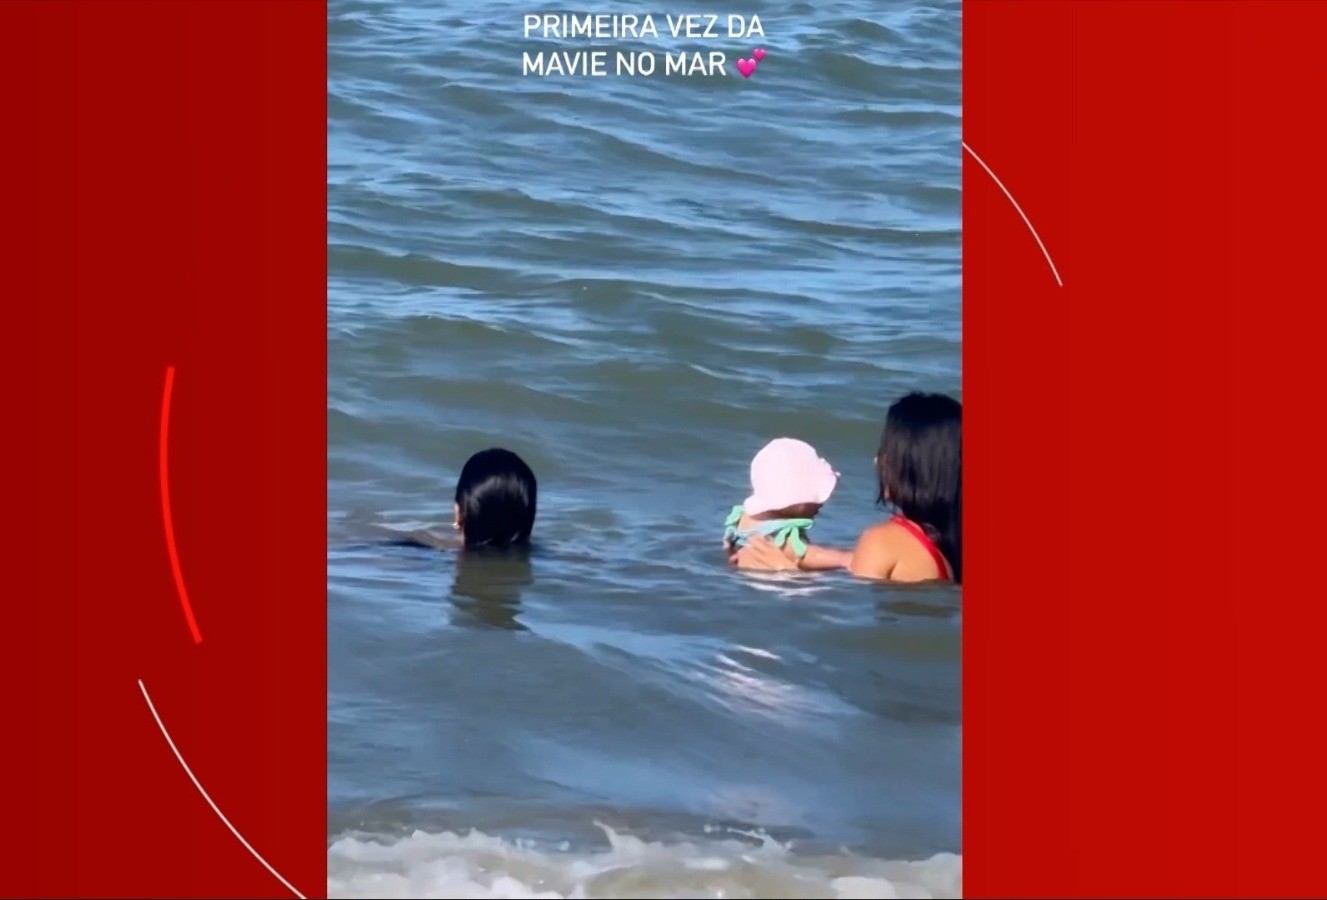 Ex de Neymar, Bruna Biacardi mostra primeiro banho de mar de Mavie em viagem à Bahia